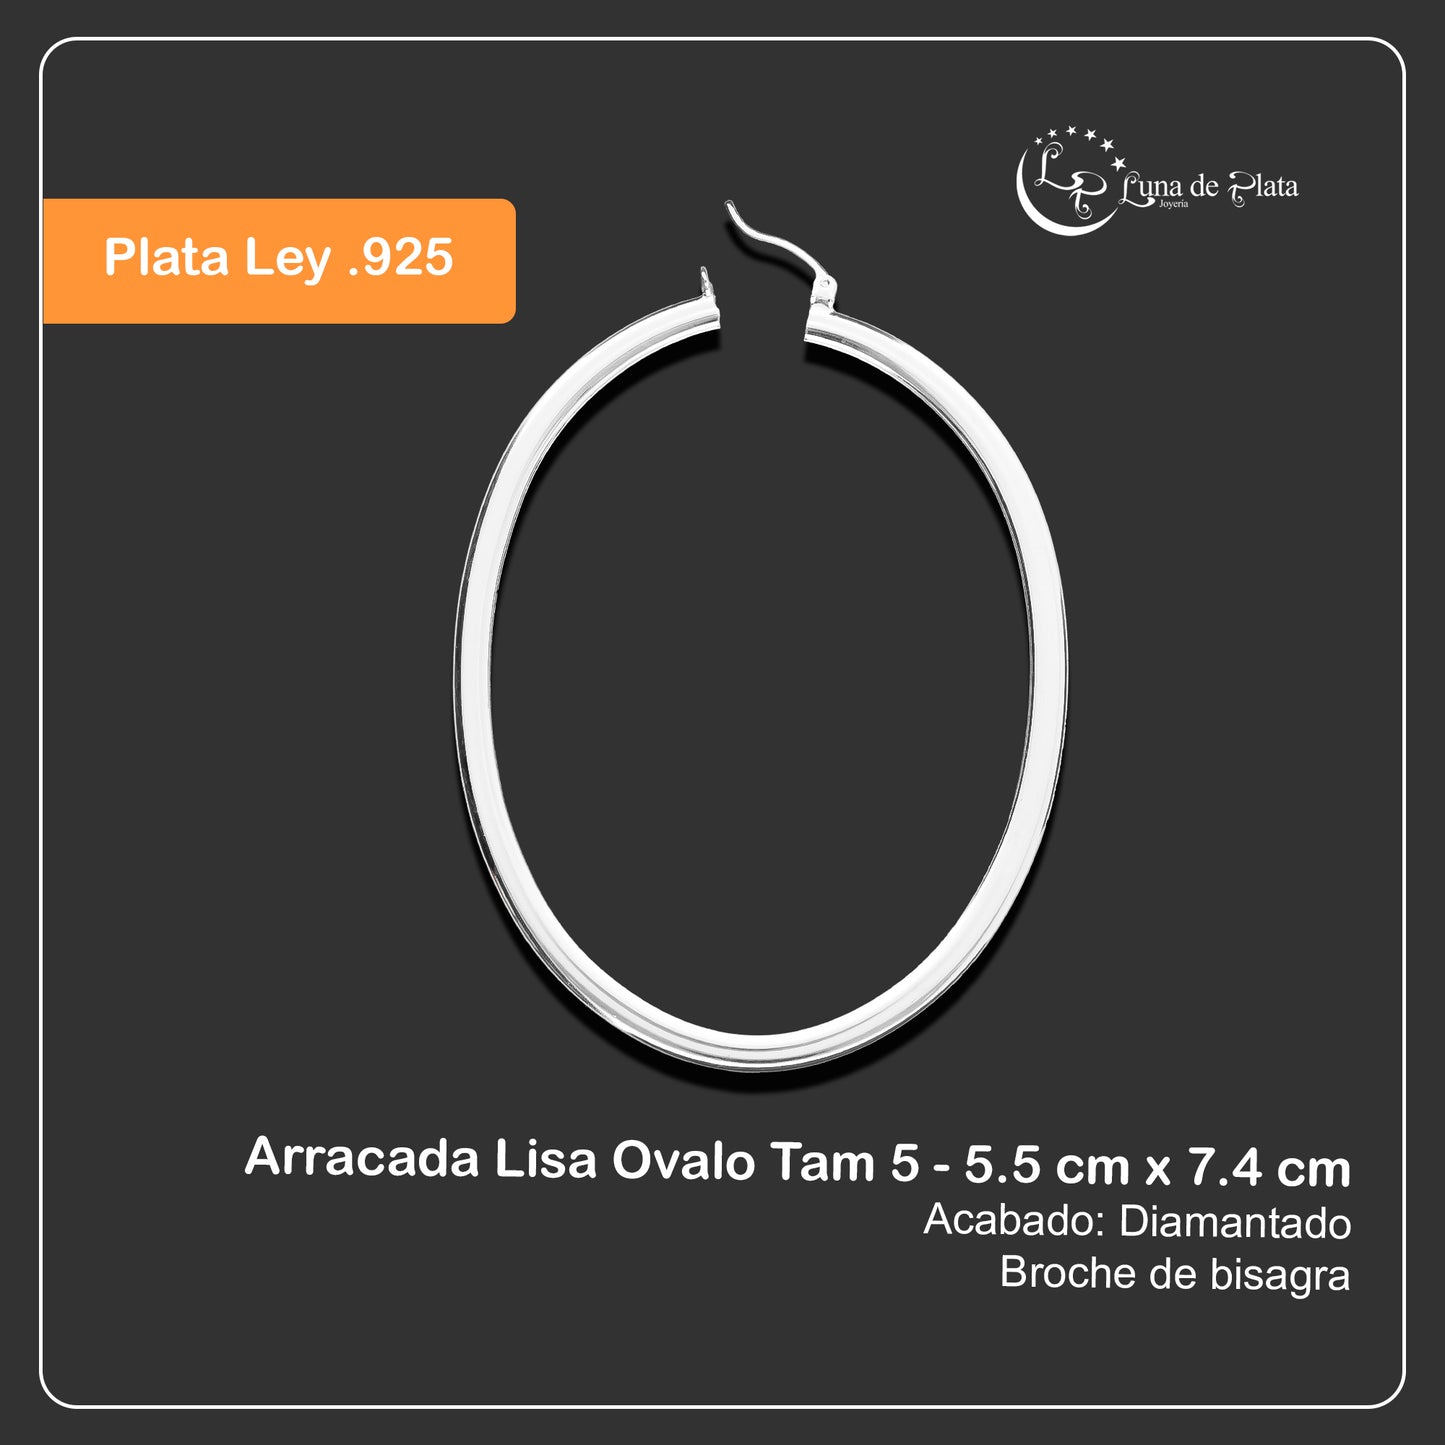 LPAL039 Arracada Lisa Ovalo Tam 5 - 5.5 cm x 7.4 cm Plata .925 2031375405